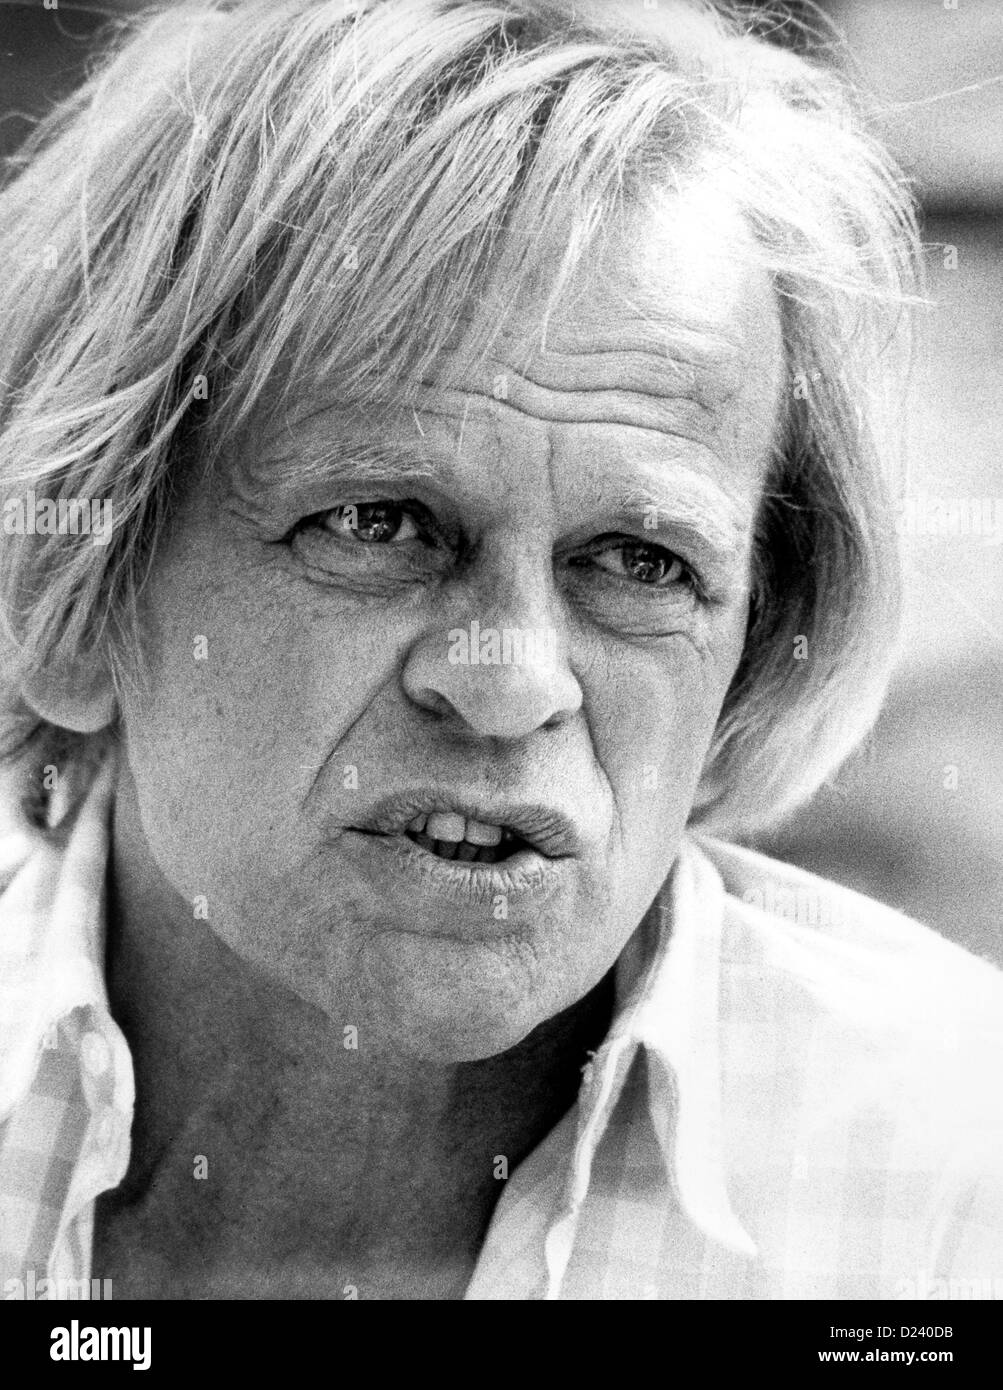 (Dpa-Dateien) - deutscher Schauspieler Klaus Kinski, abgebildet bei den internationalen Filmfestspielen in Cannes, Frankreich, 25. Mai 1982. Ein 'Enfant schreckliches"der Filmindustrie, seine Filme sind unter anderem"Aguirre, der Zorn Gottes"(" Aguirre: The Wrath of God ") und" Nosferatu: Phantom der Nacht "("Nosferatu the Vampire"). Kinski war unter dem Namen Nikolaus Günther Nakszynski am 18. Oktober 1926 in Danzig, Deutschland (jetzt Gdansk, Polen) geboren und starb am 23. November 1991 in Lagunitas, Kalifornien, an einem Herzinfarkt. Stockfoto